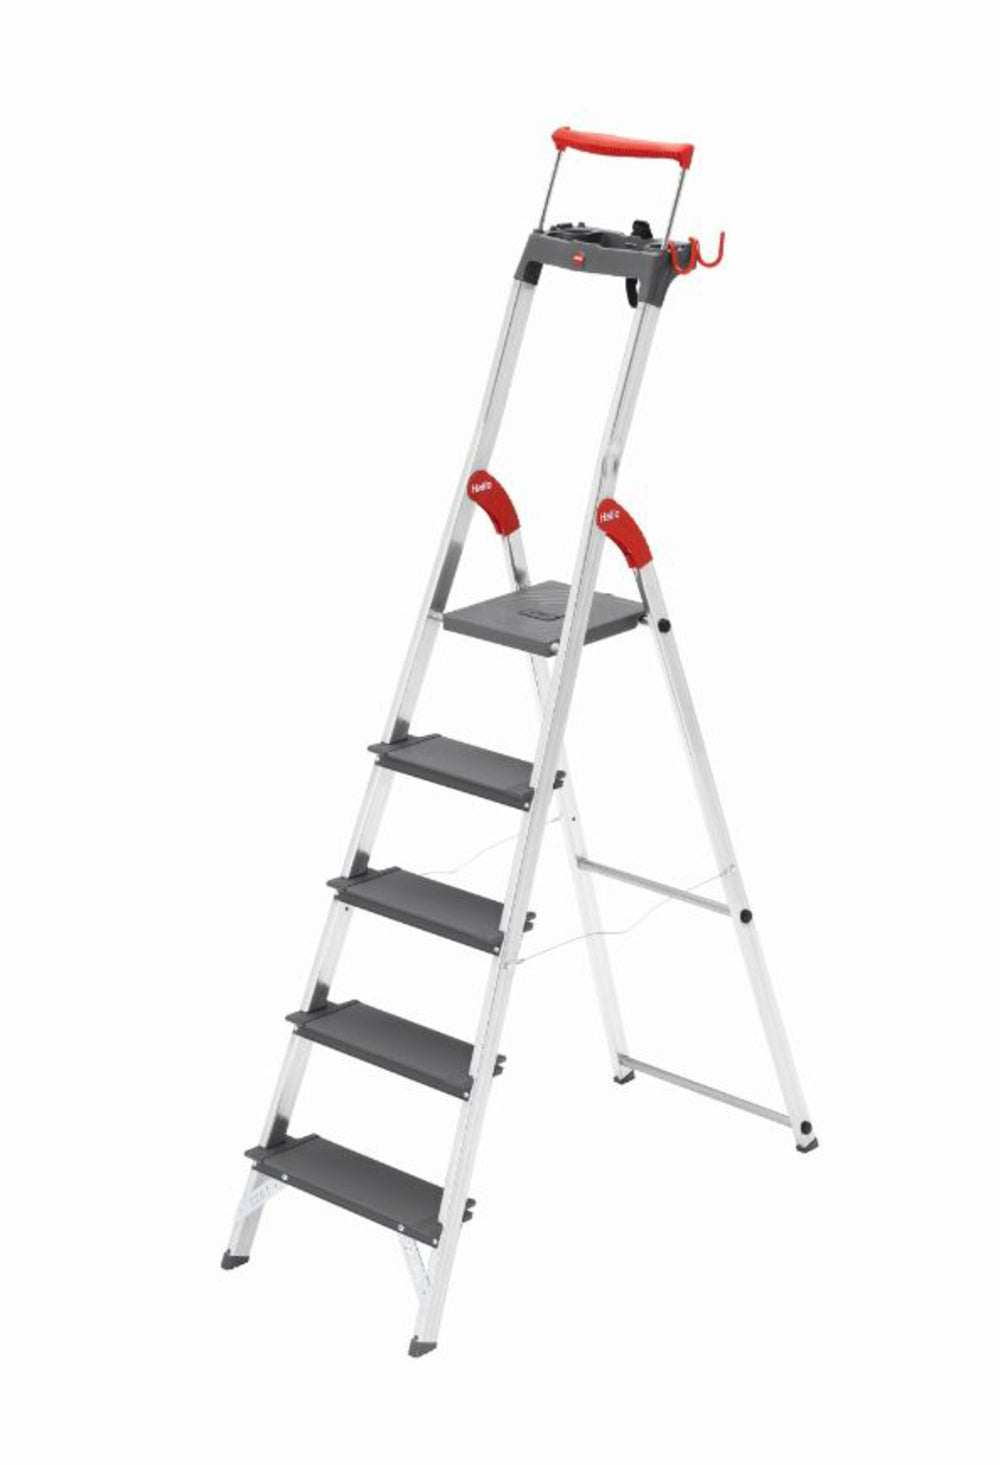 Zware-last ladder met veiligheidsvoorzieningen - 1,39 m lang - 1 – De Ronde webshop - Alles voor het magazijn